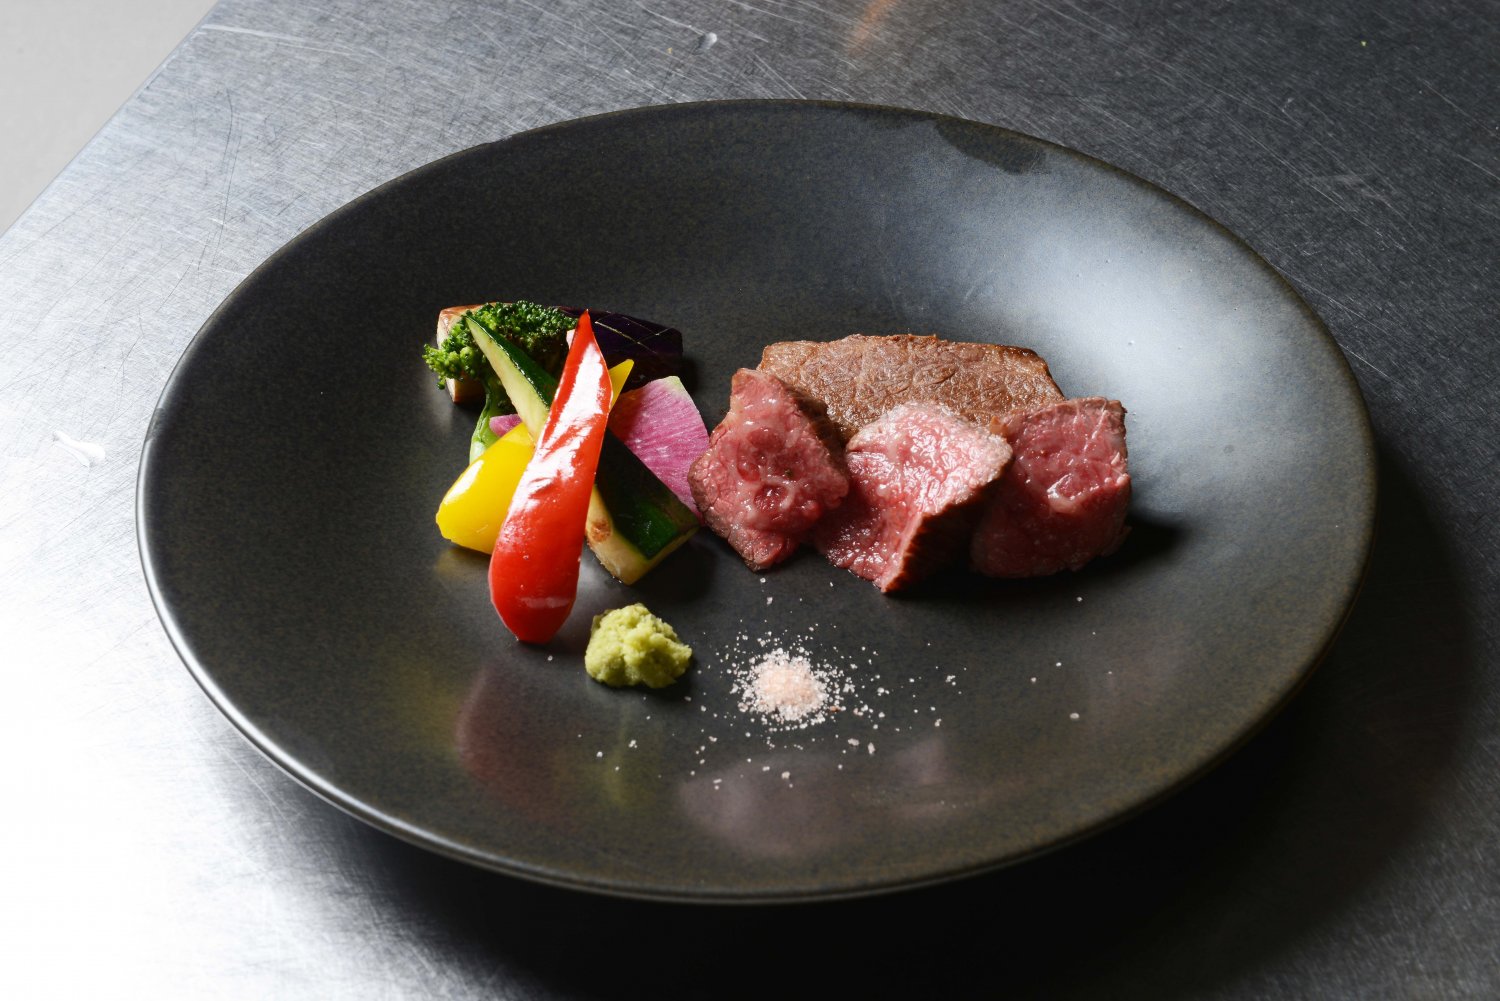 尾崎牛は脂がくどくなく、あっさりしている。ステーキで味わえば肉本来の味を堪能できる。